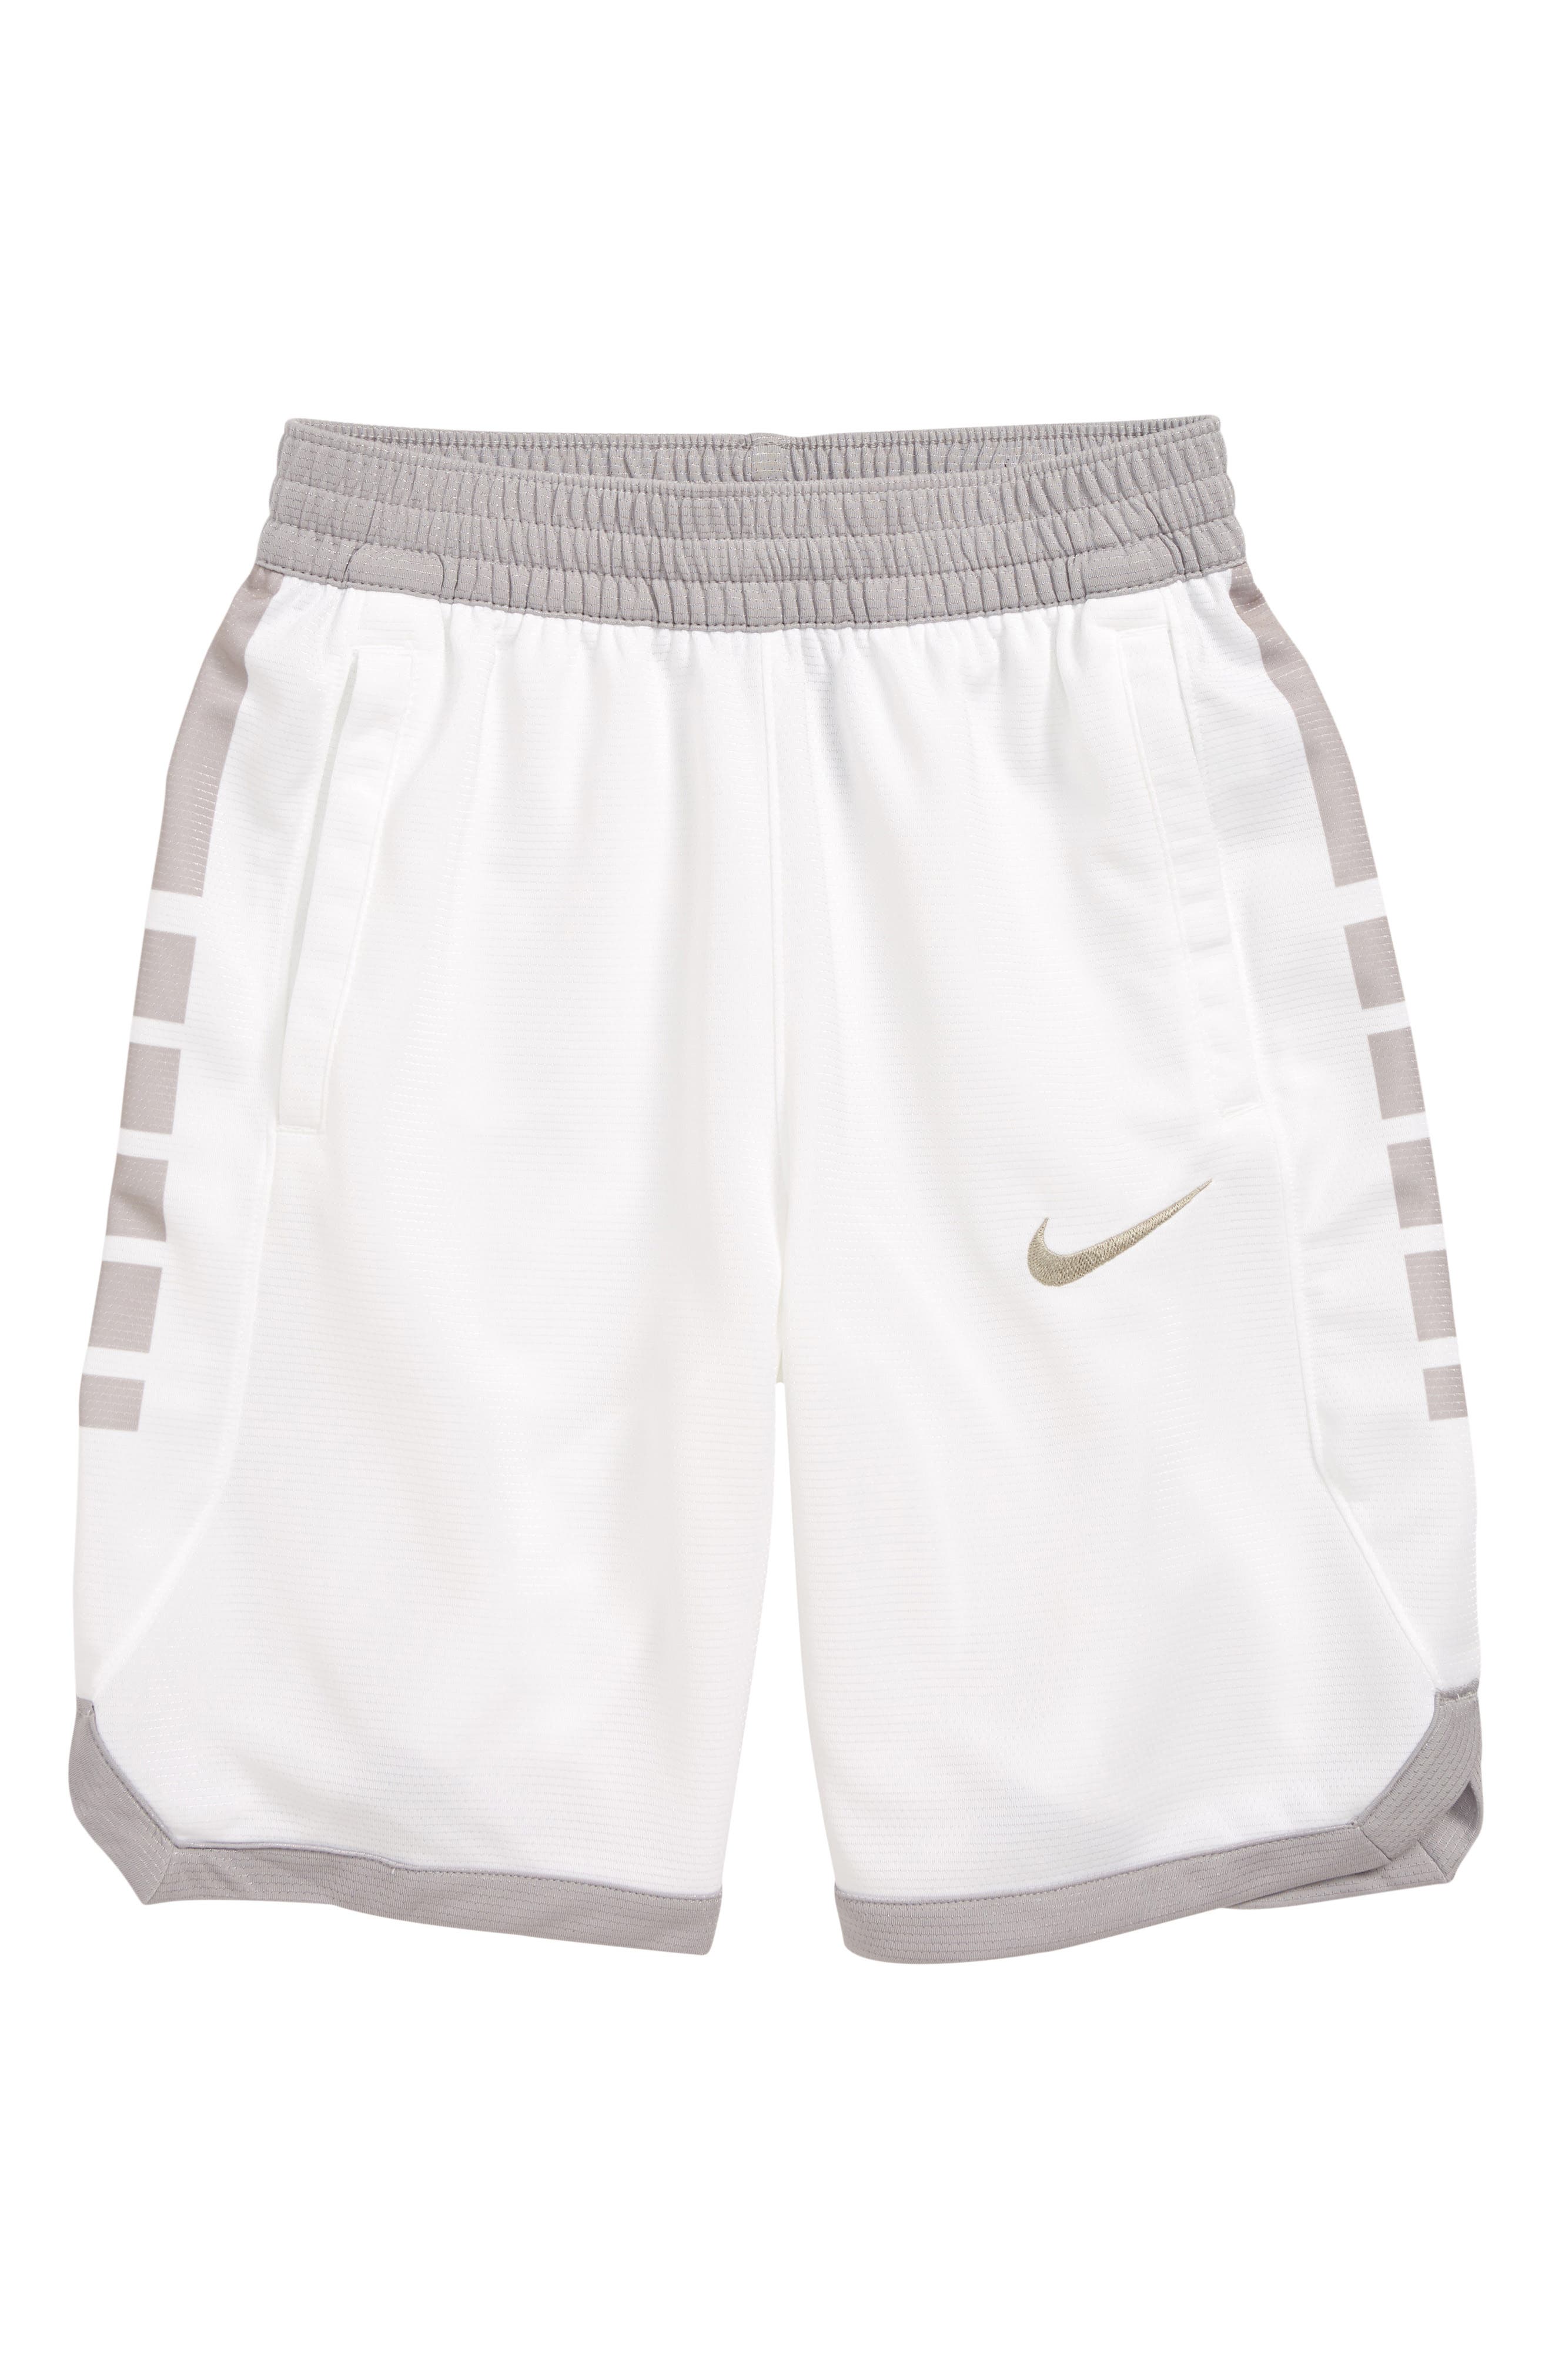 nike white basketball shorts